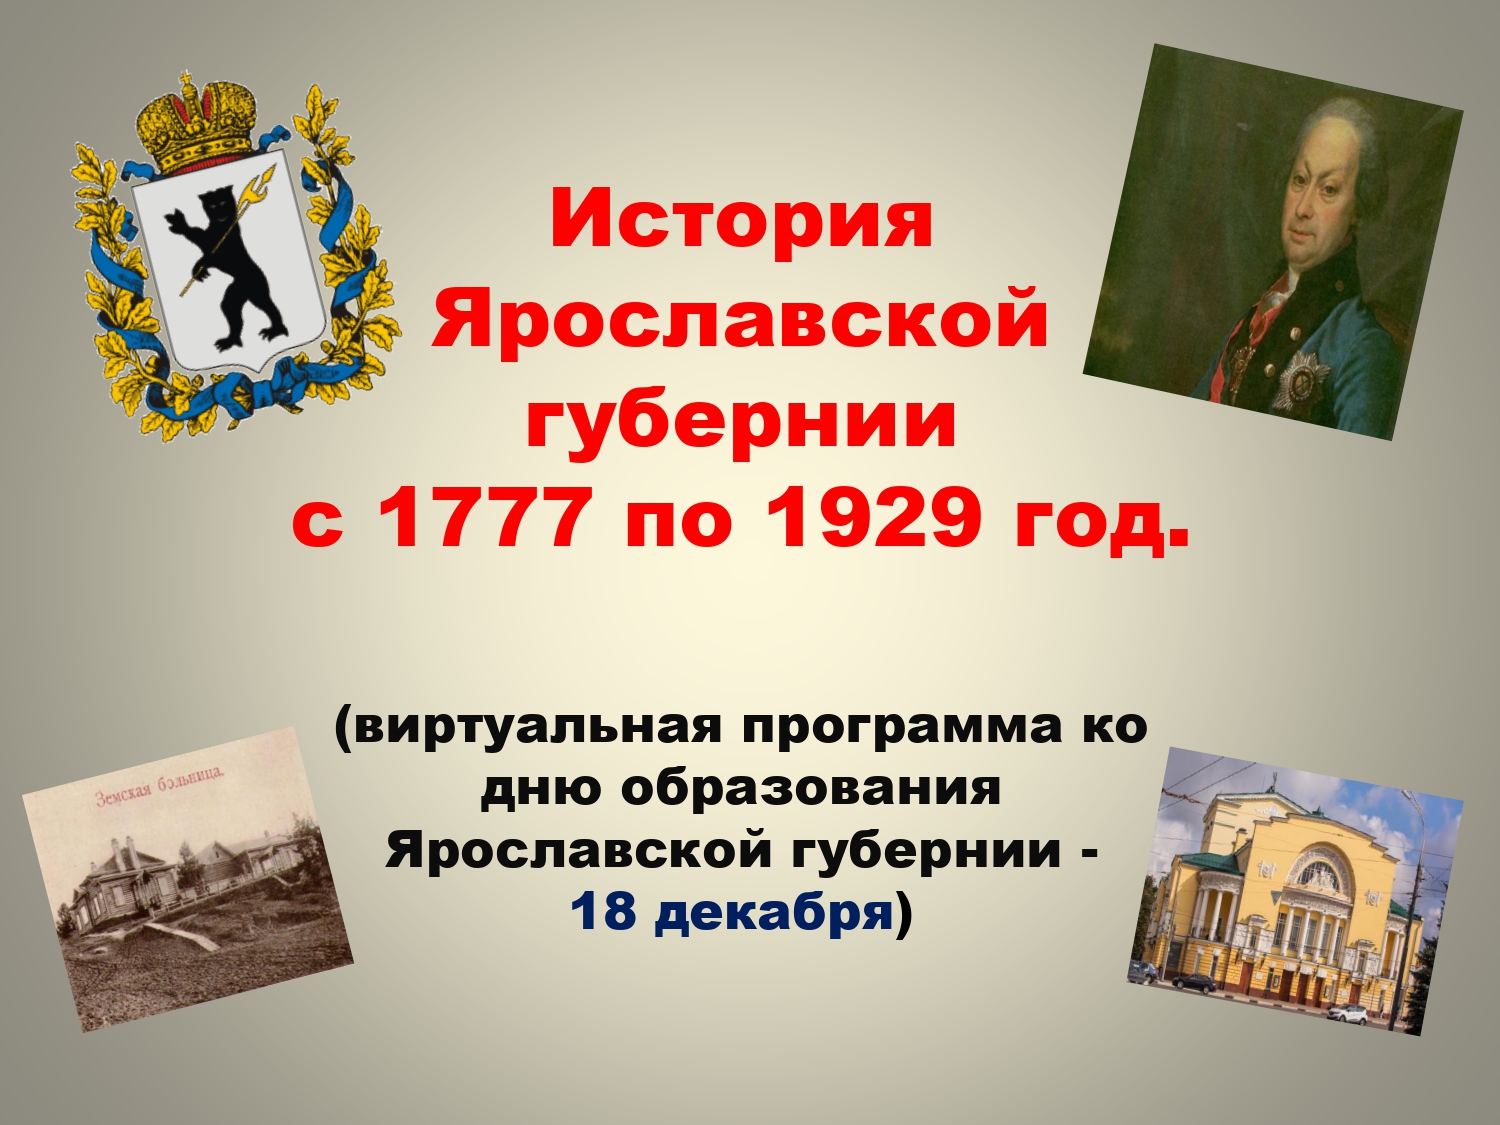 Виртуальная программа «История Ярославской губернии с 1777 по 1929 год»